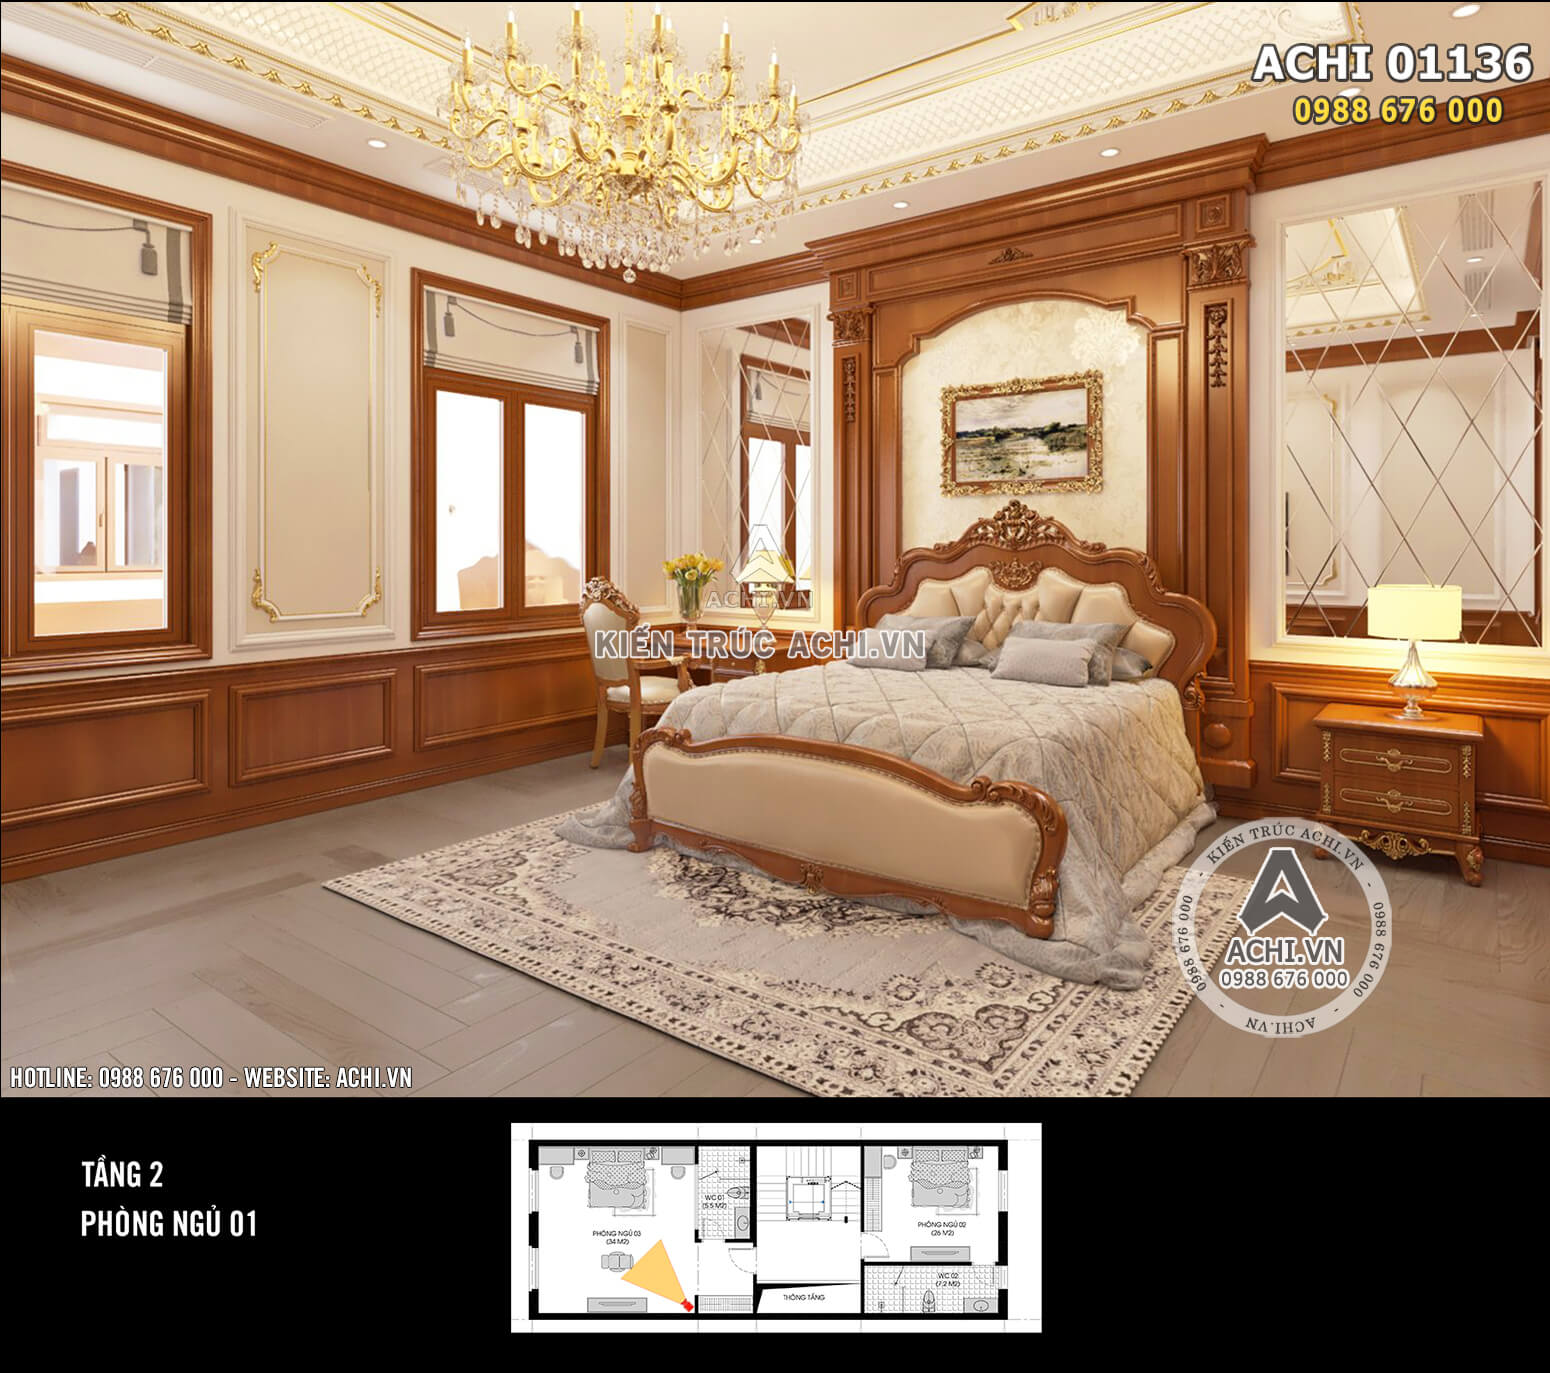 Mẫu nội thất tân cổ điển biệt thự Pháp 4 tầng đẹp, đẳng cấp - Mã số: ACHI 01136